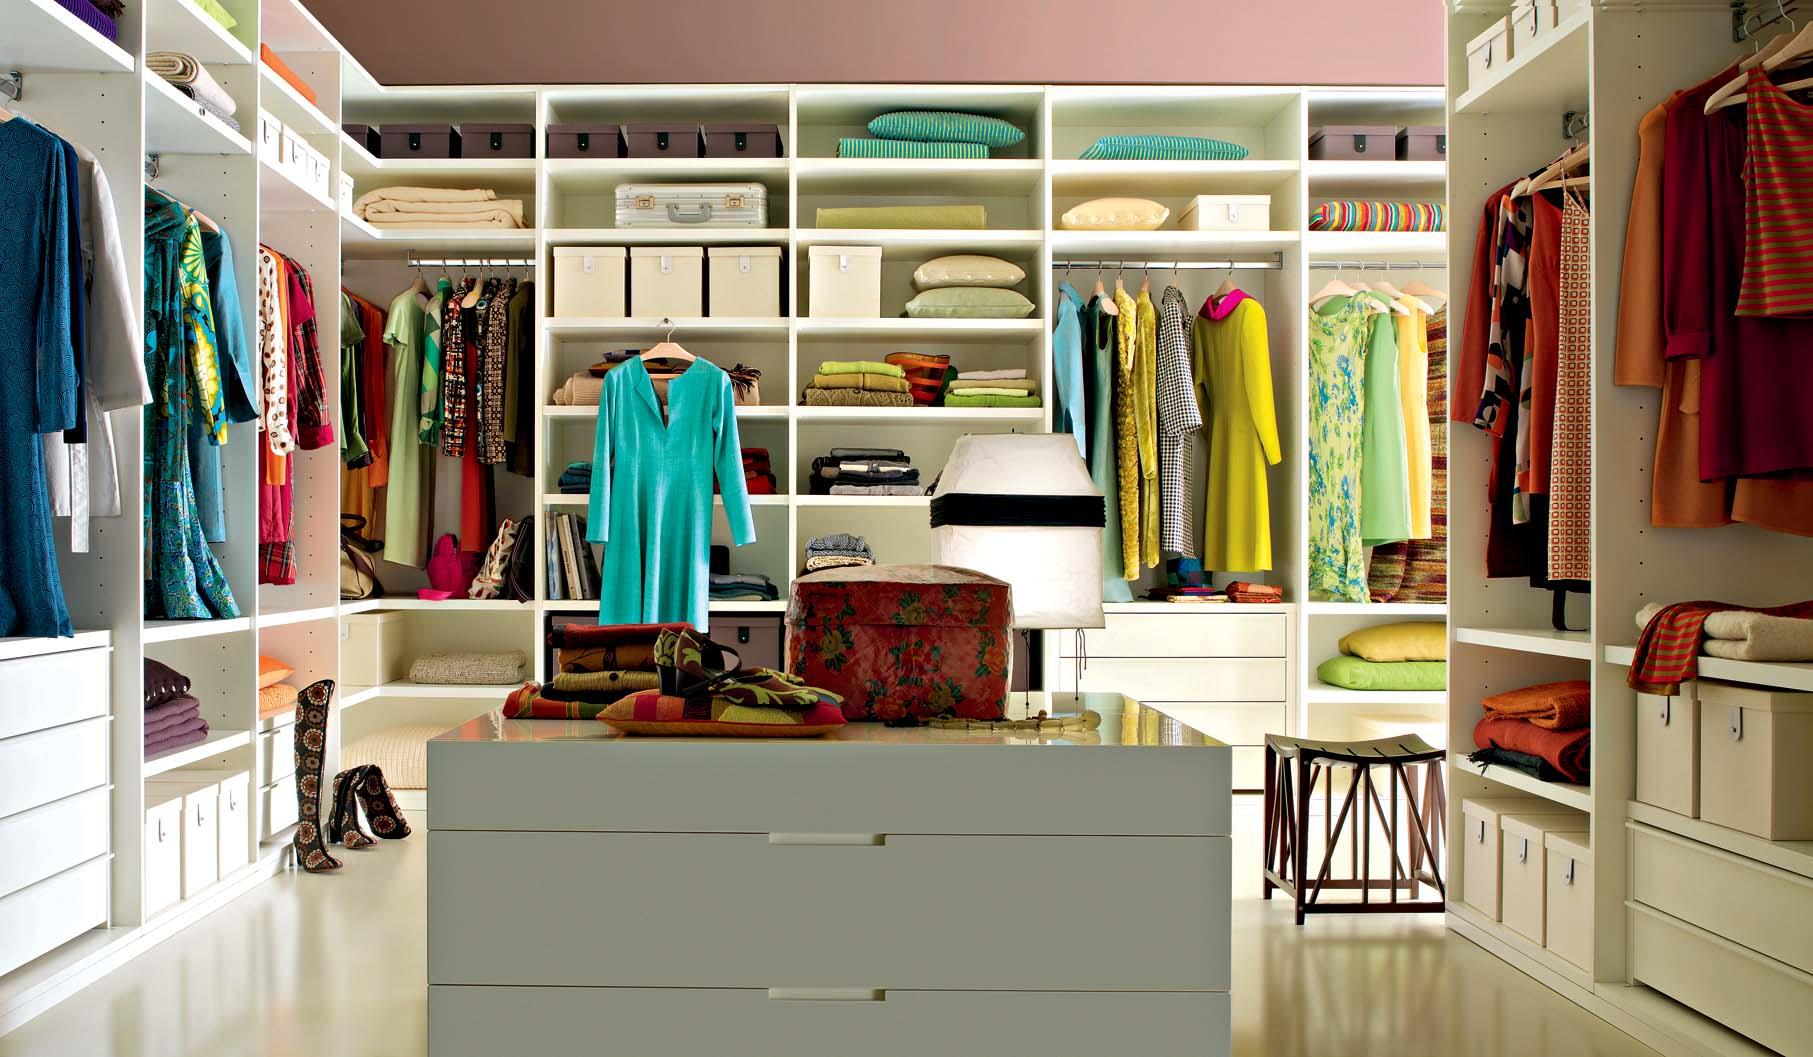 Особое внимание при обустройстве гардеробной комнаты следует уделить выбору осветительных приборов